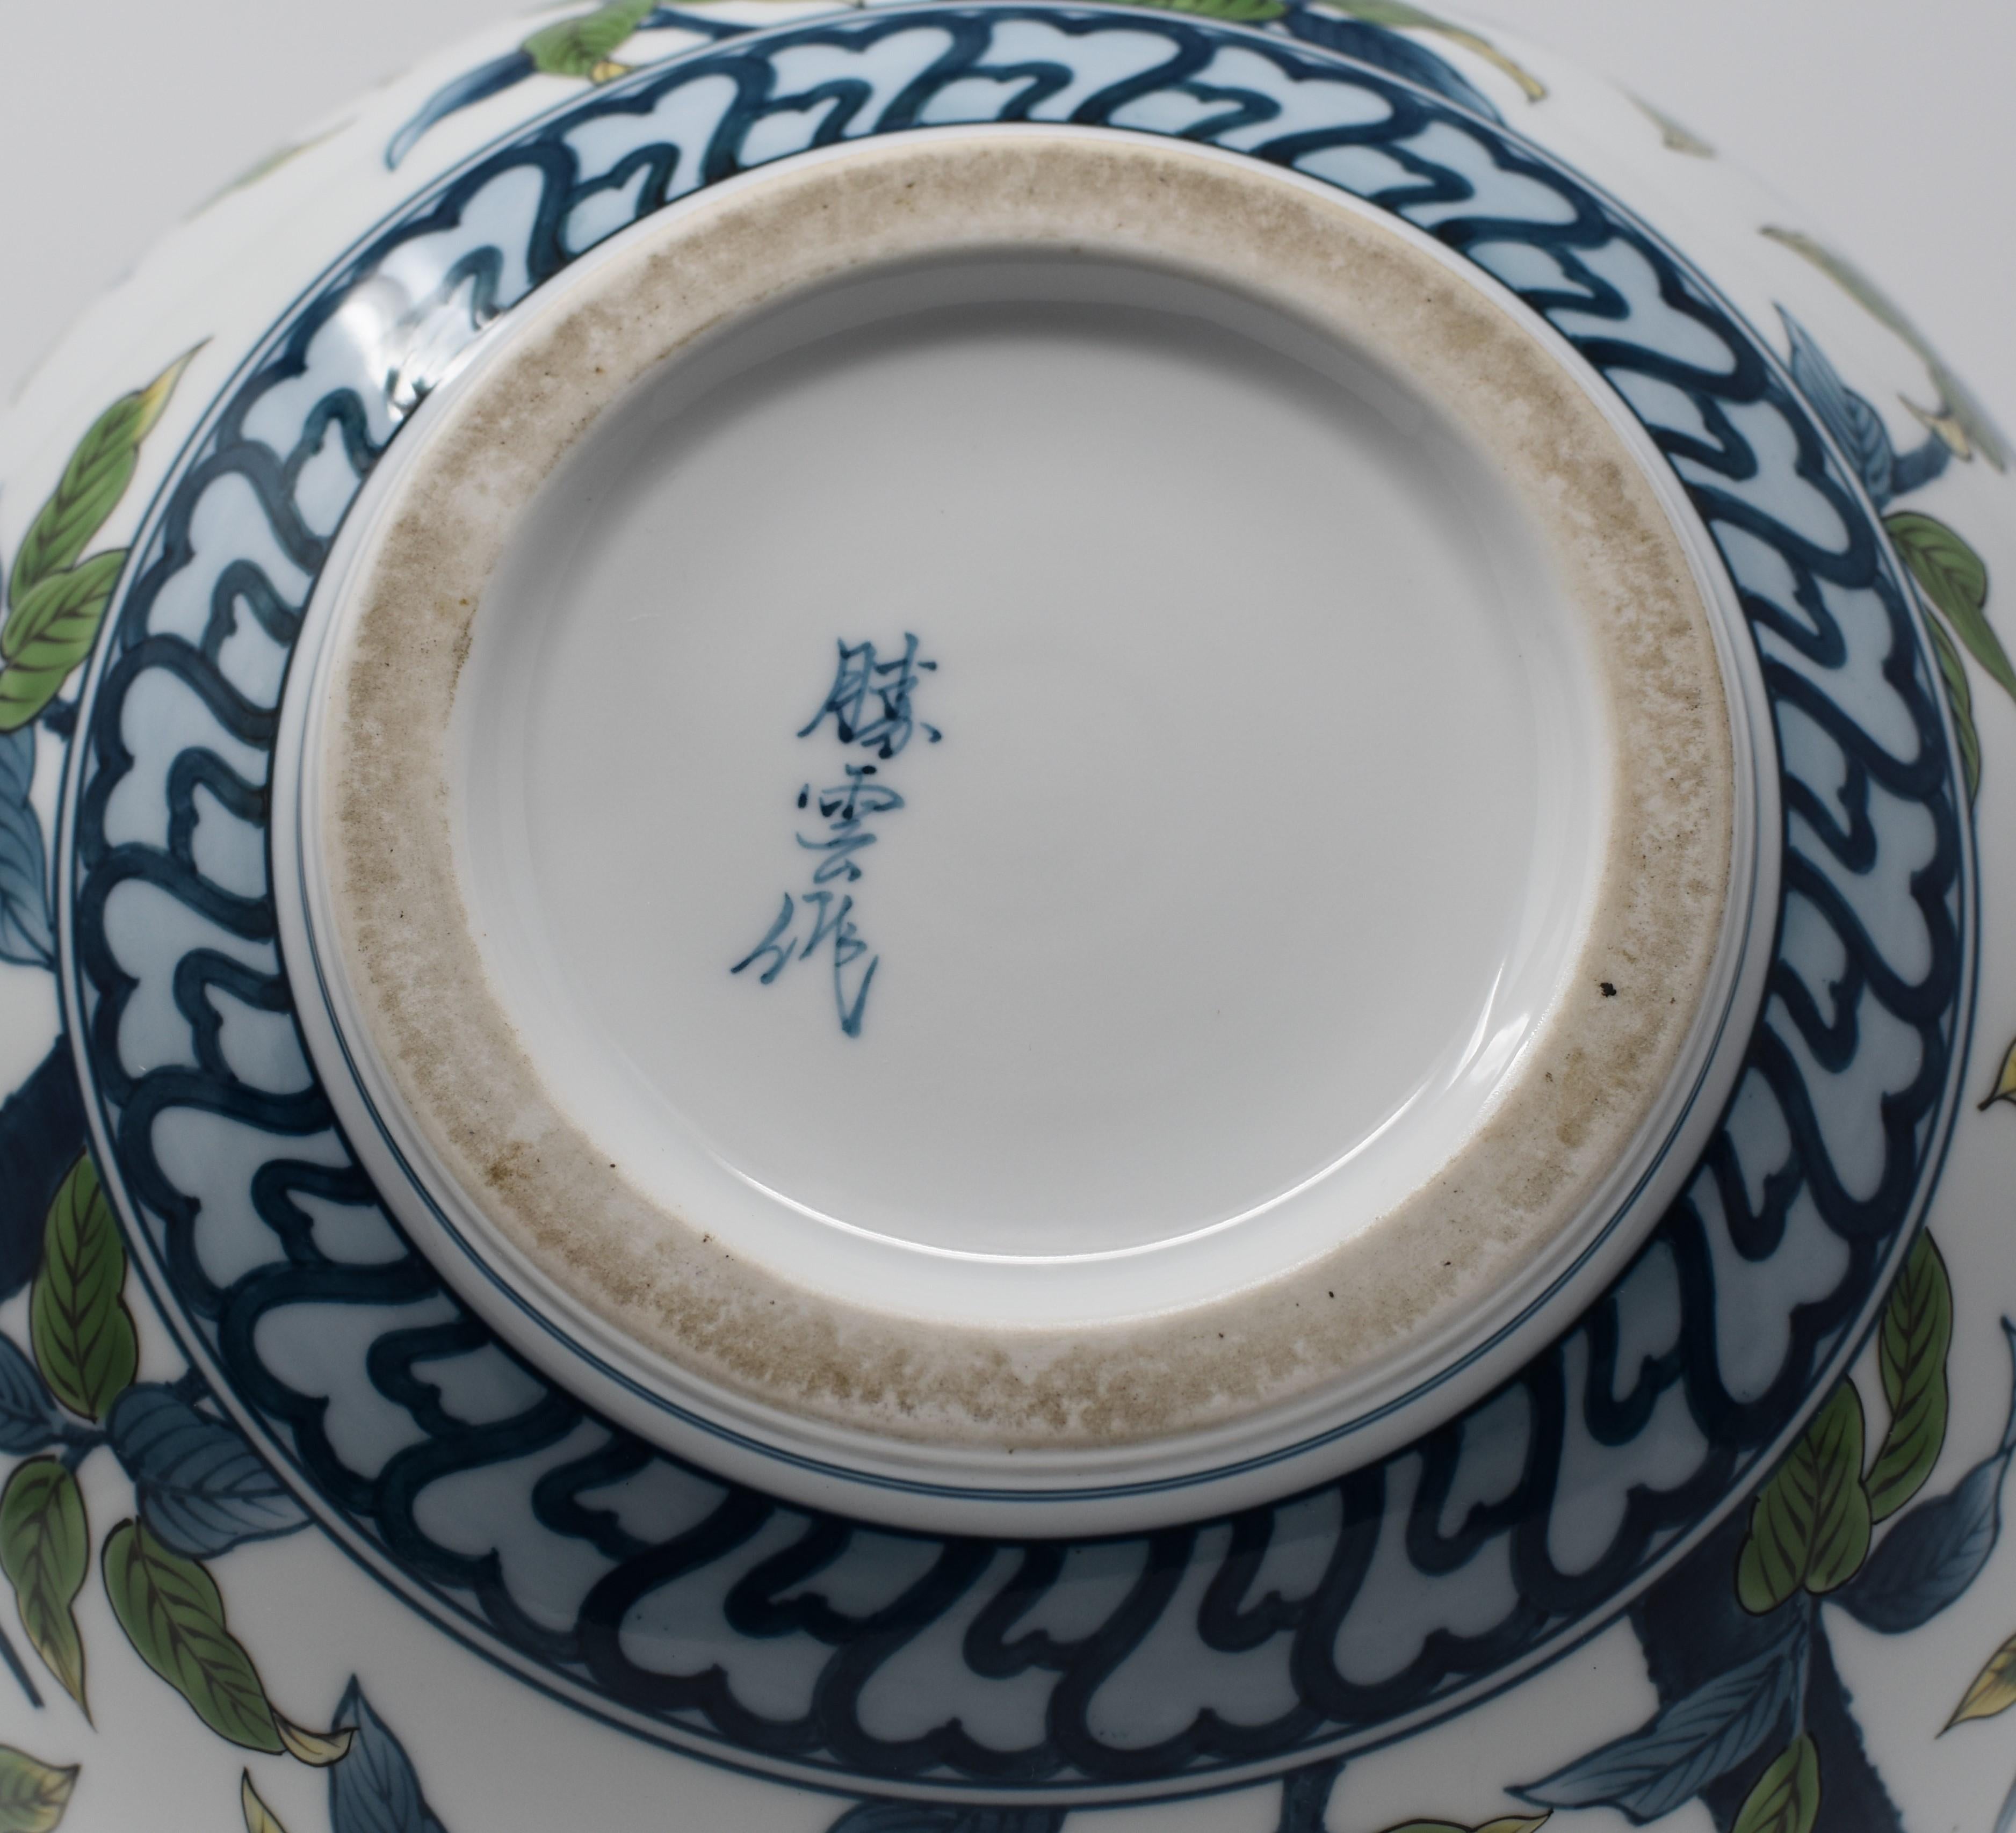  Contempory Imari Large Japanese Decorative Porcelain Vase by Master Artist 5